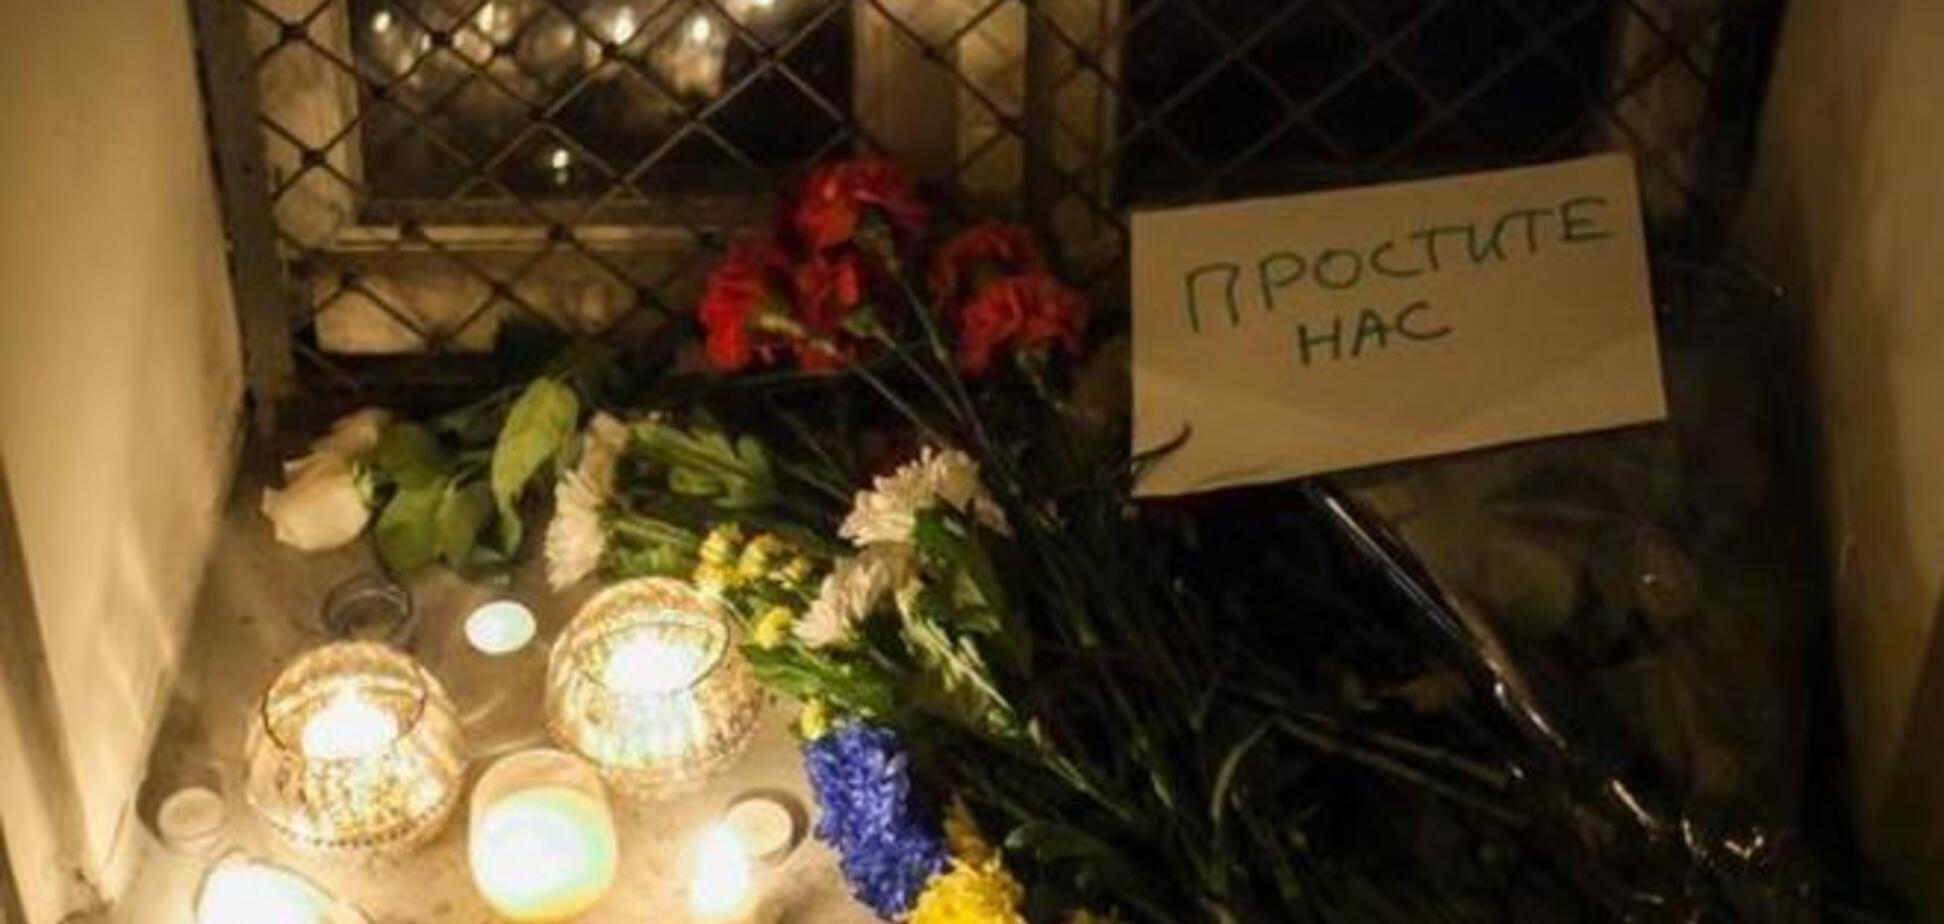 Единицы москвичей принесли к посольству Нидерландов свечи и записки 'простите нас'